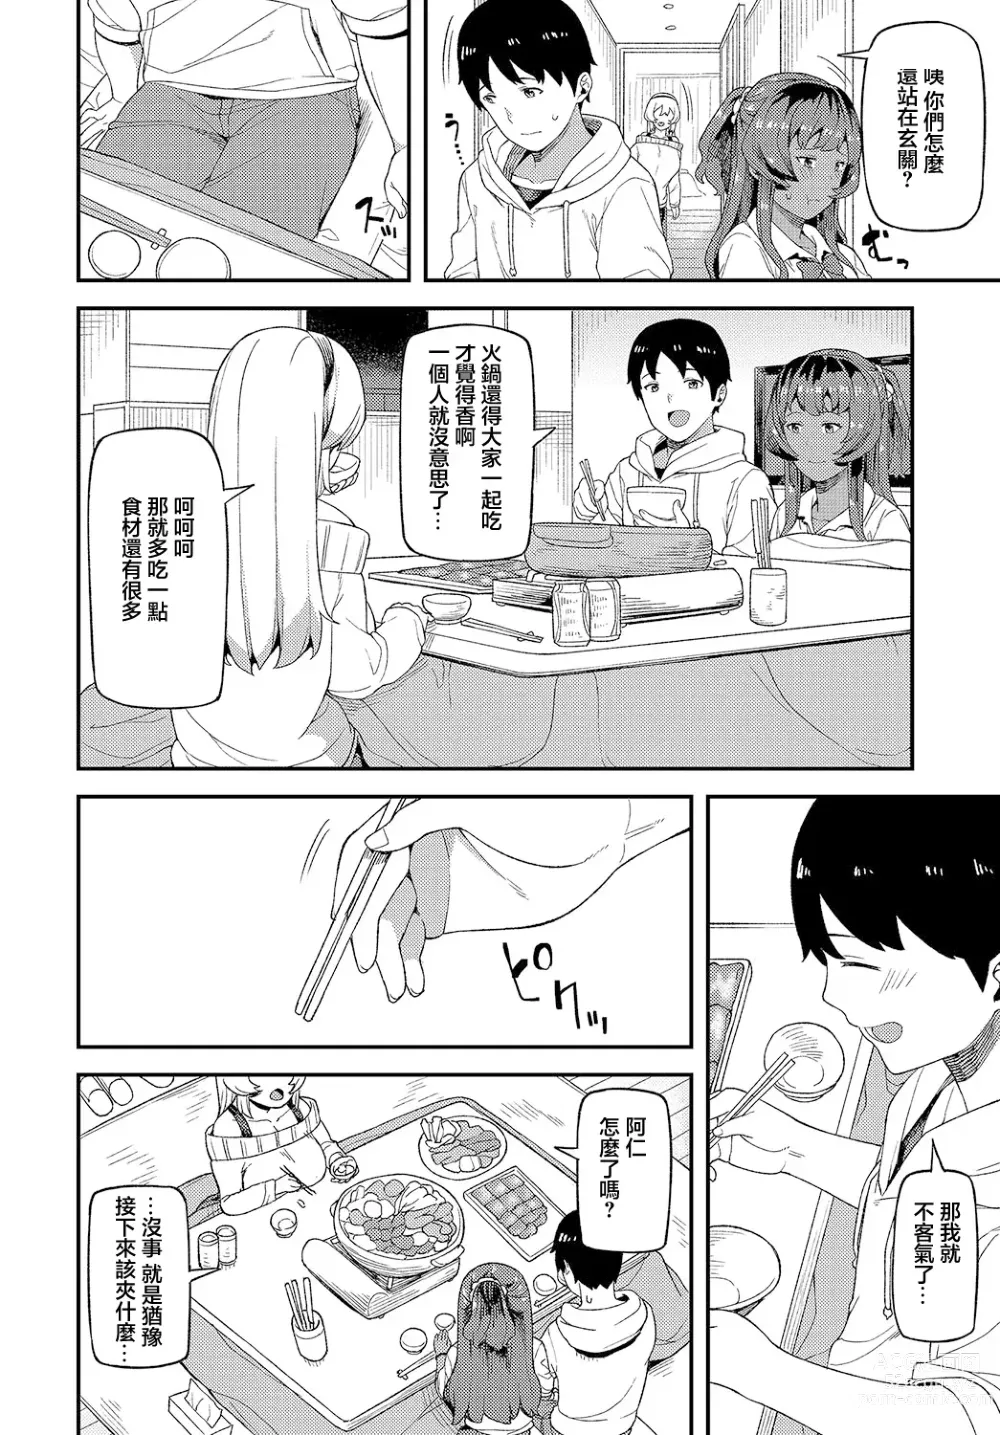 Page 5 of manga Shinkinkyori Renai